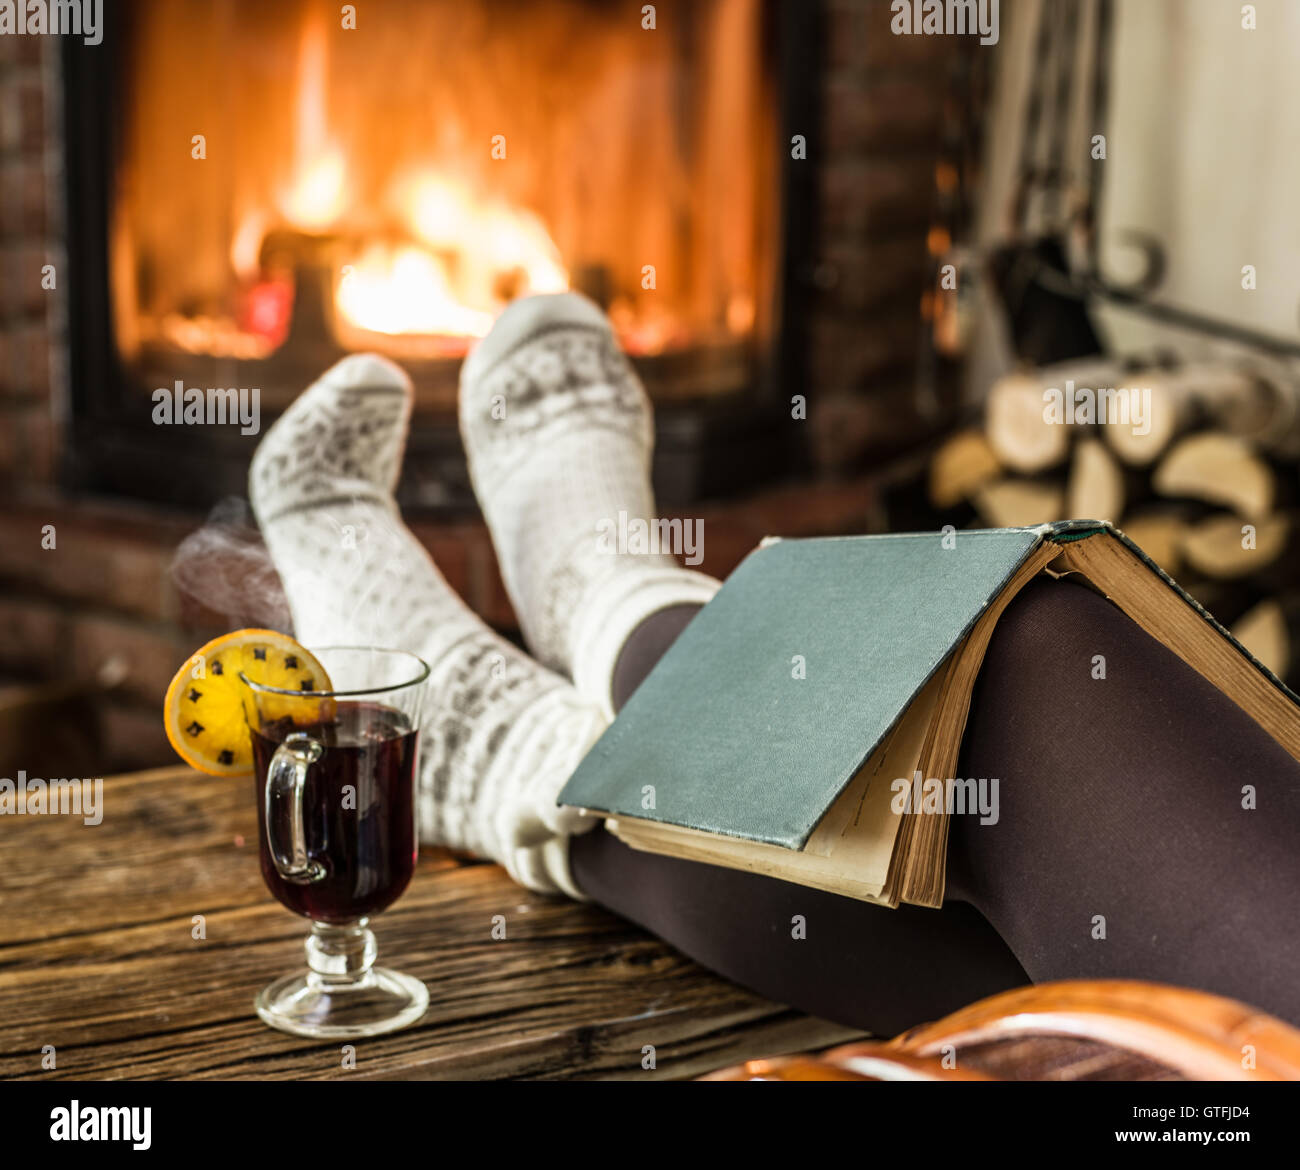 Vin brulé e prenota nelle mani della donna. Rilassarsi davanti al fuoco ardente nel freddo giorno d'inverno. Foto Stock